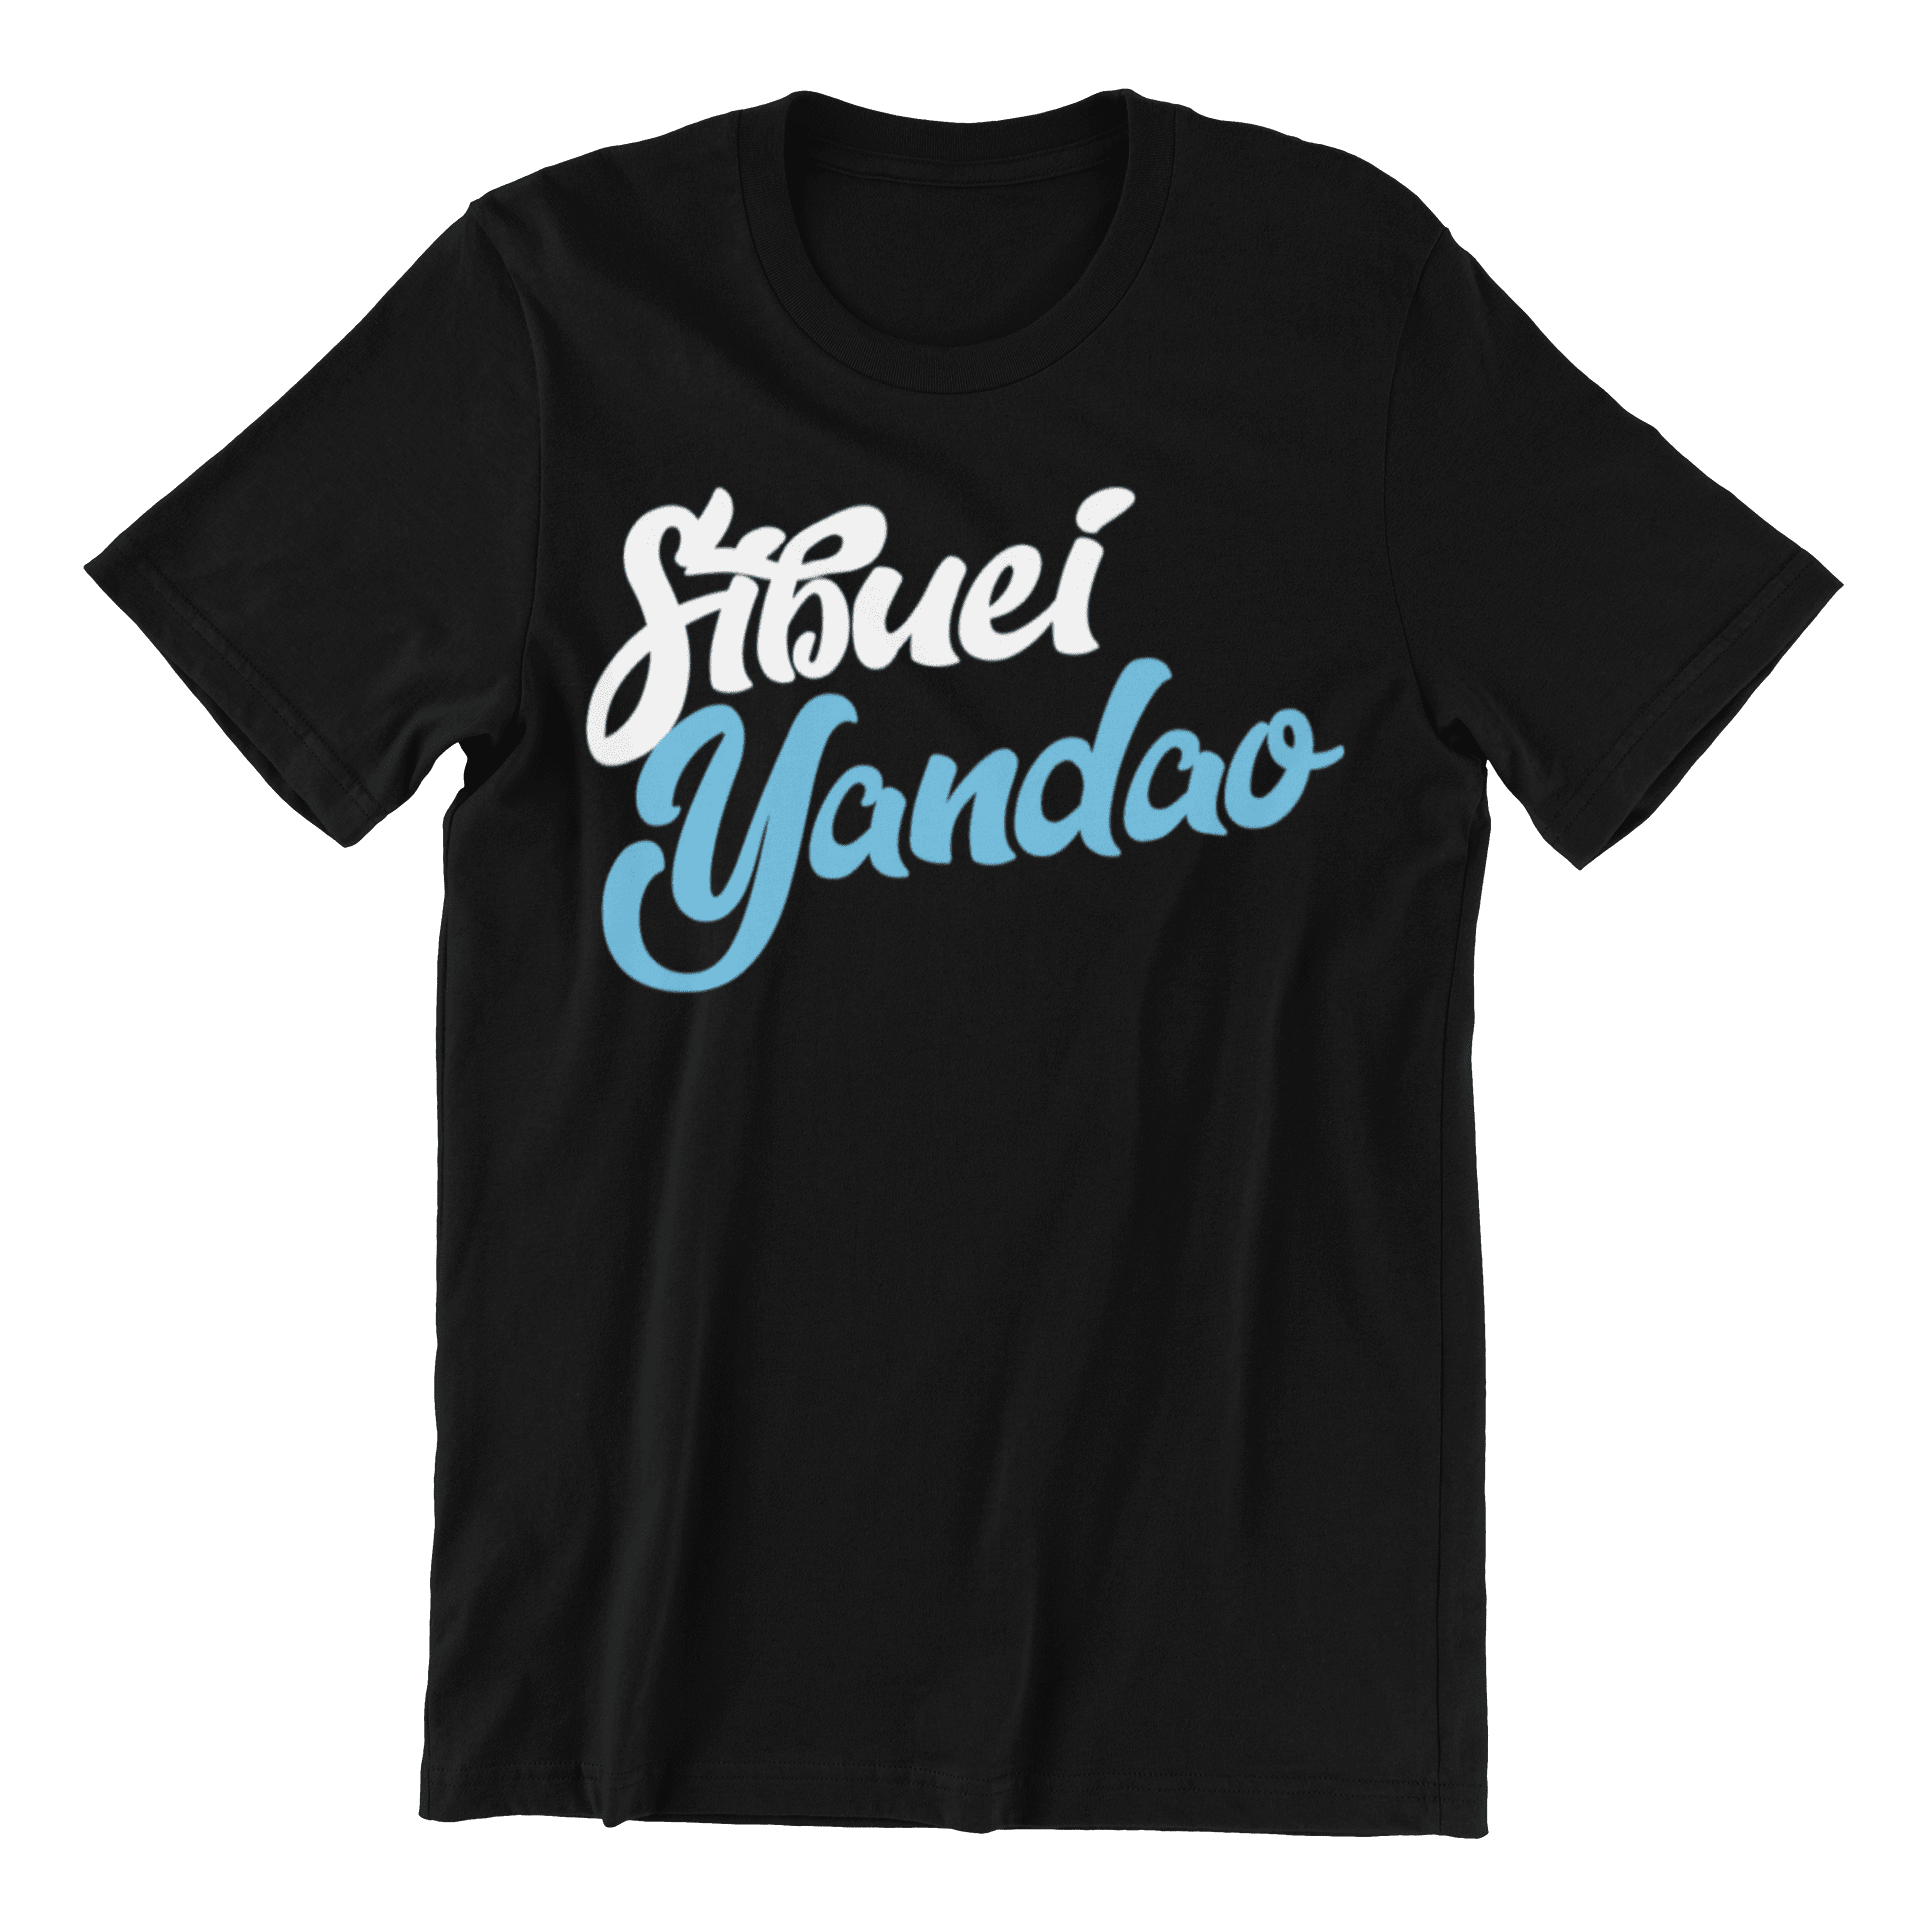 Sibuei Yandao Crew Neck S-Sleeve T-shirt